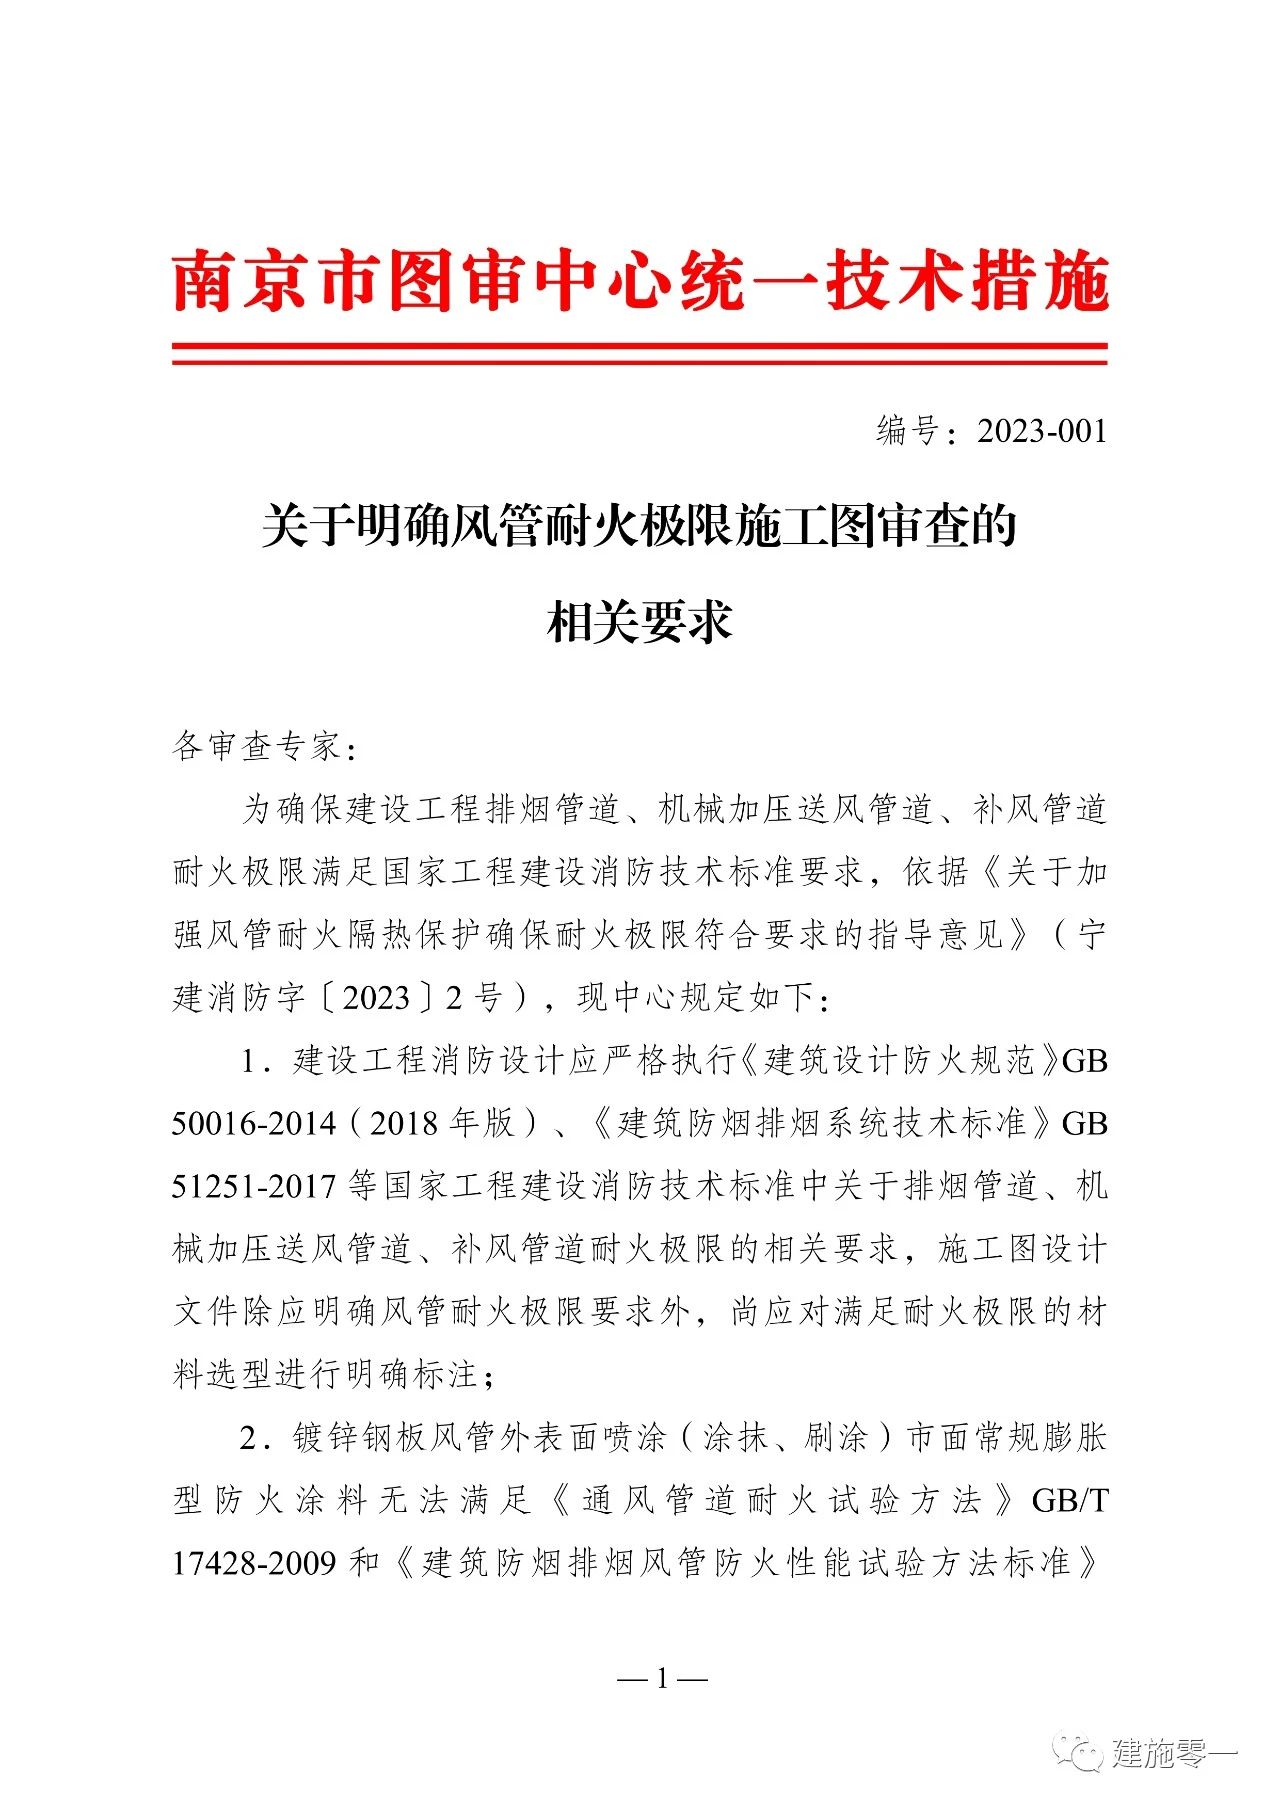 南京市发布《关于明确风管耐火极限施工图审查的相关要求》